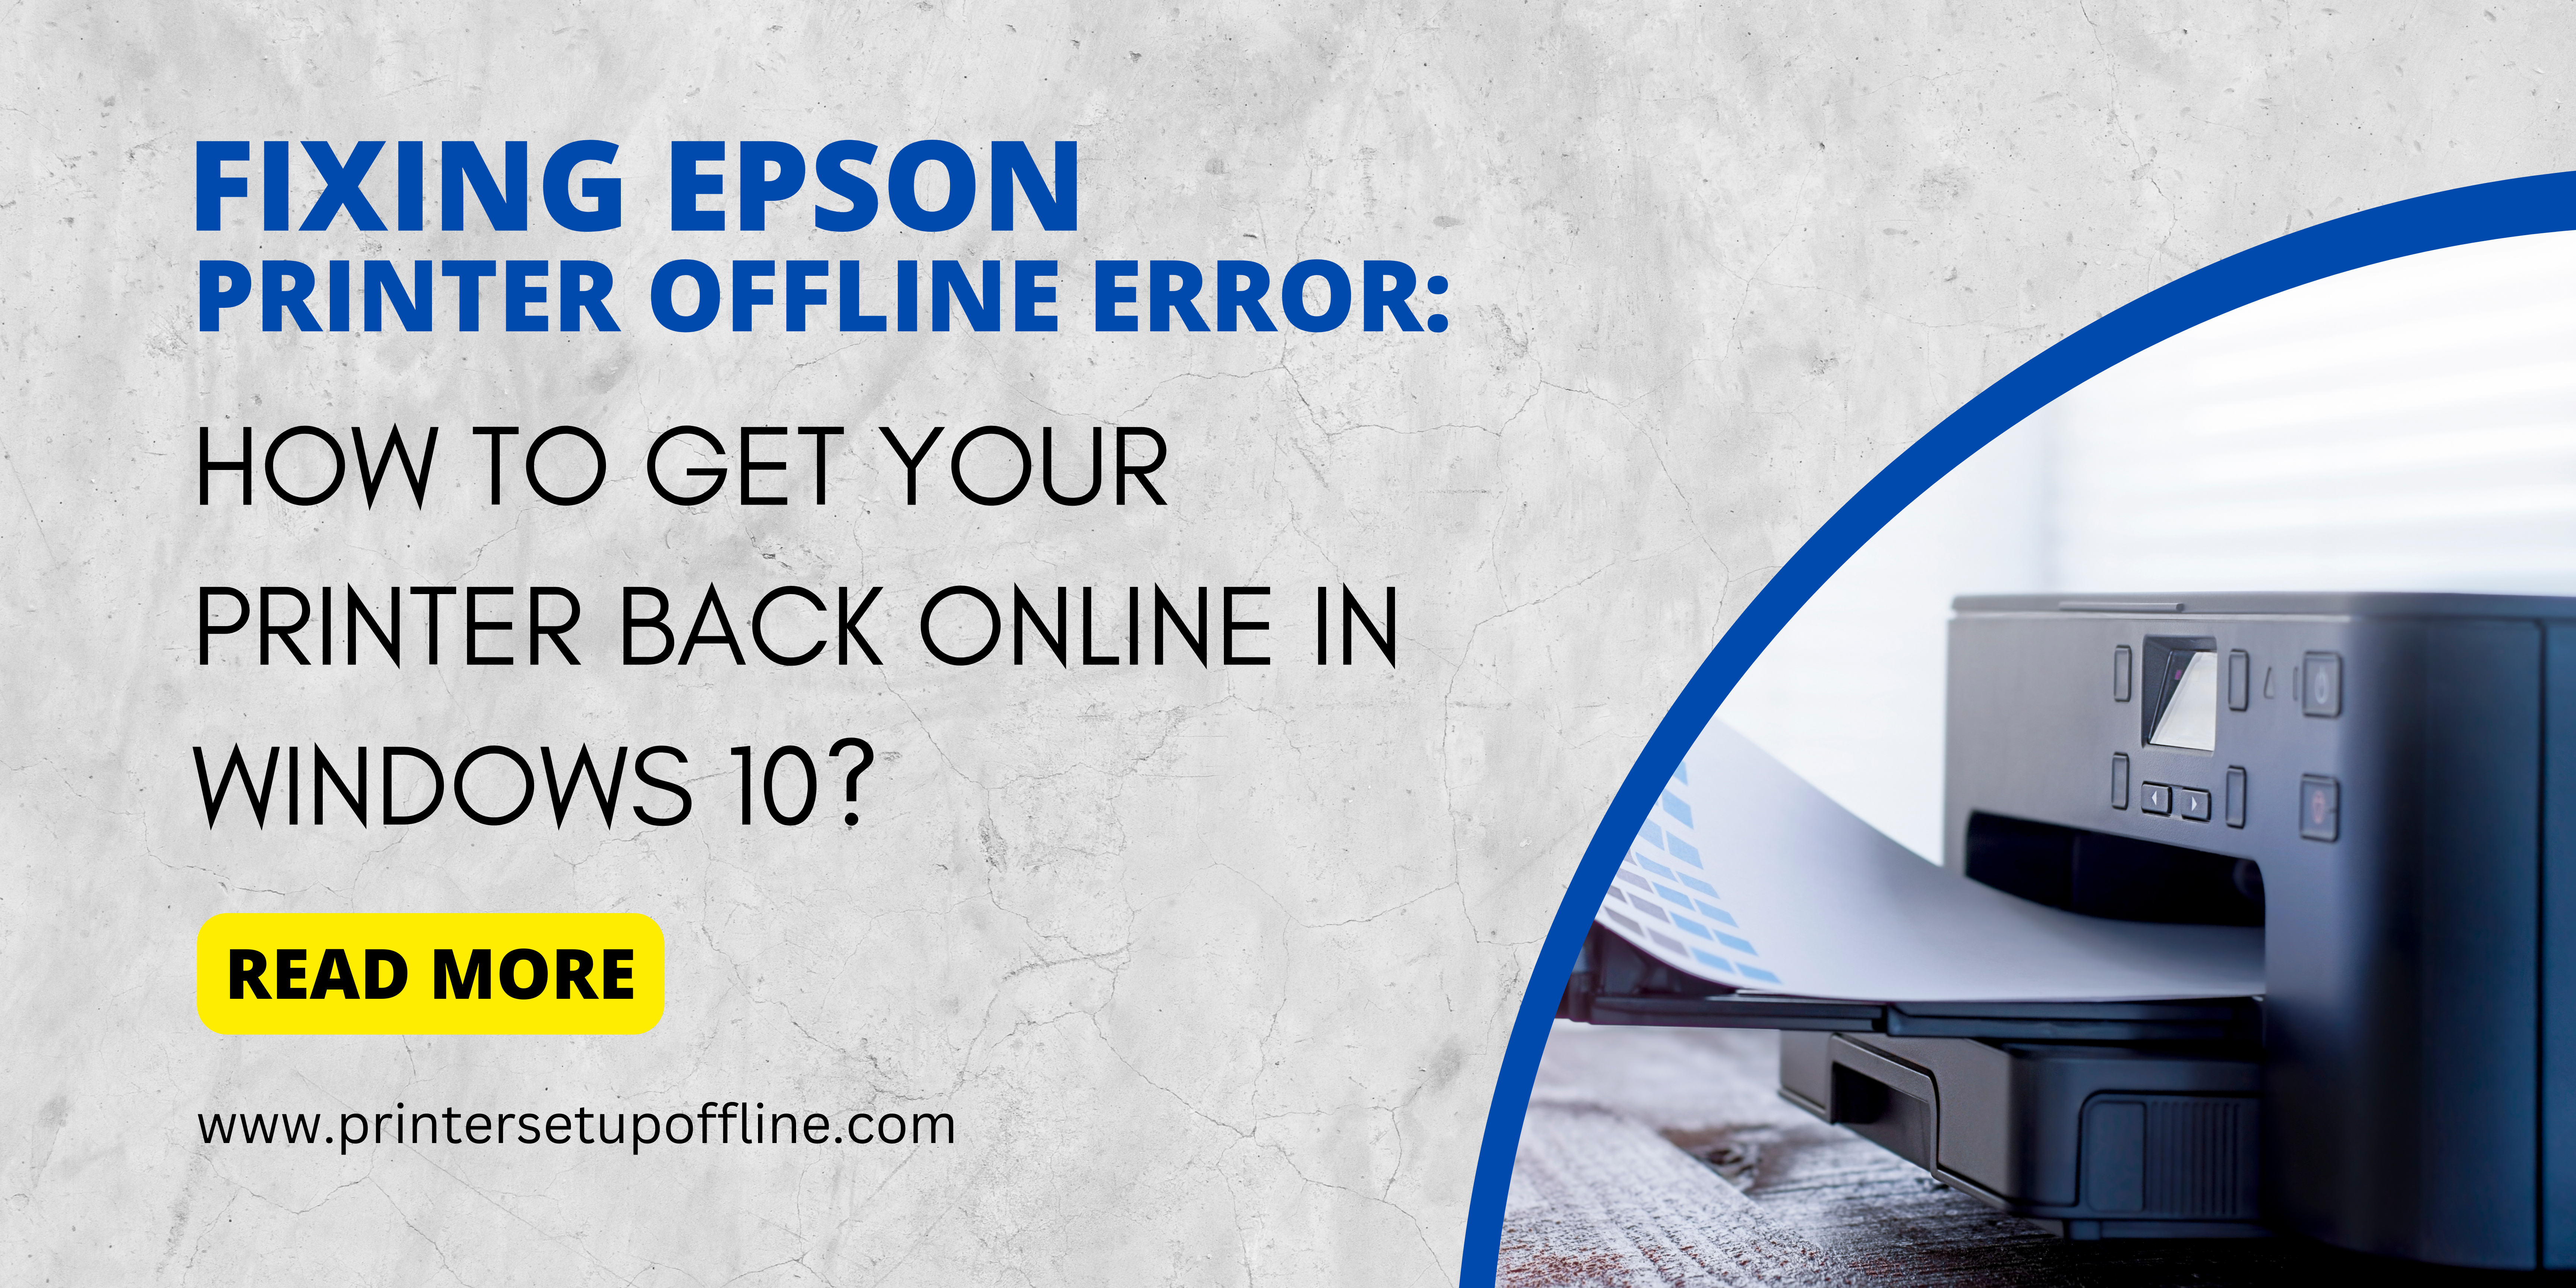 Epson Printer Offline Error